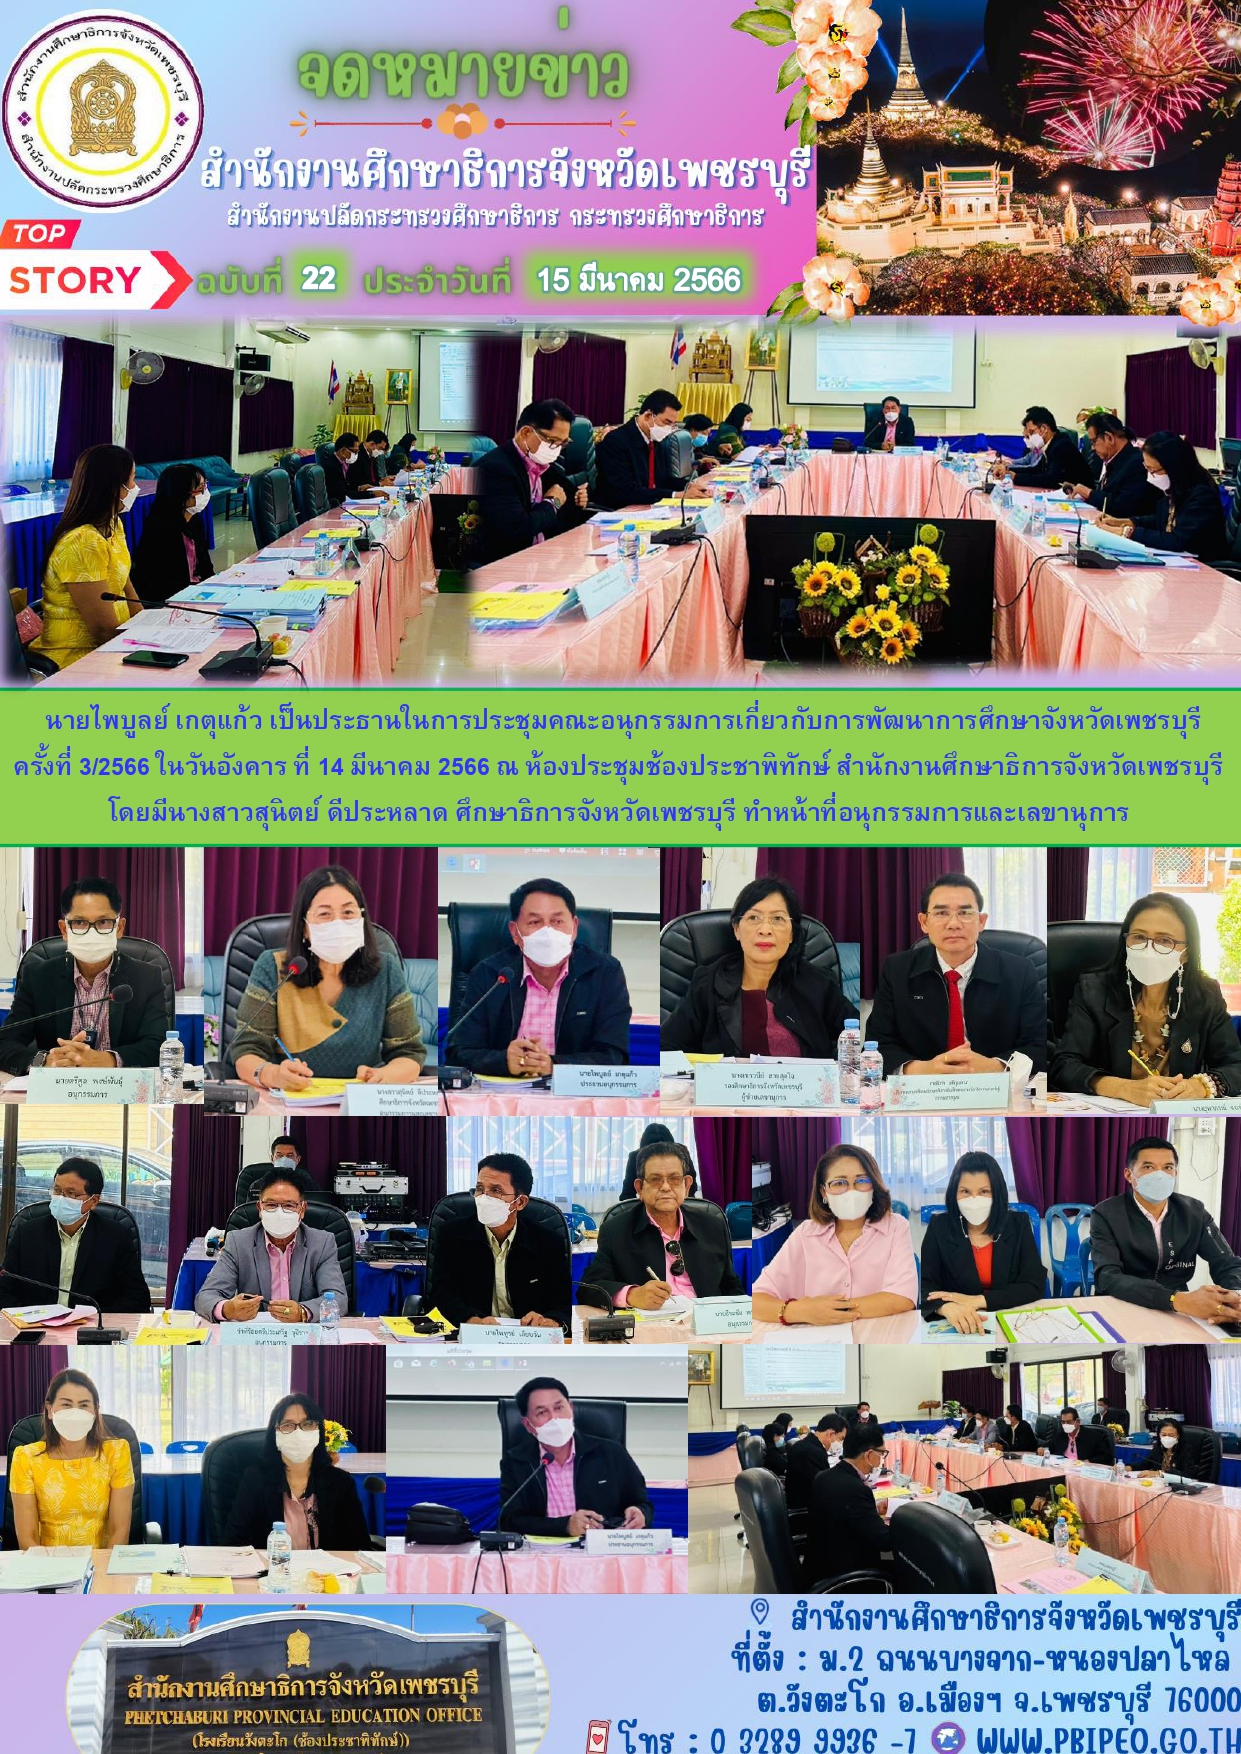 ประชุมคณะอนุกรรมการเกี่ยวกับการพัฒนาการศึกษาจังหวัดเพชรบุรี ครั้งที่ 3/2566